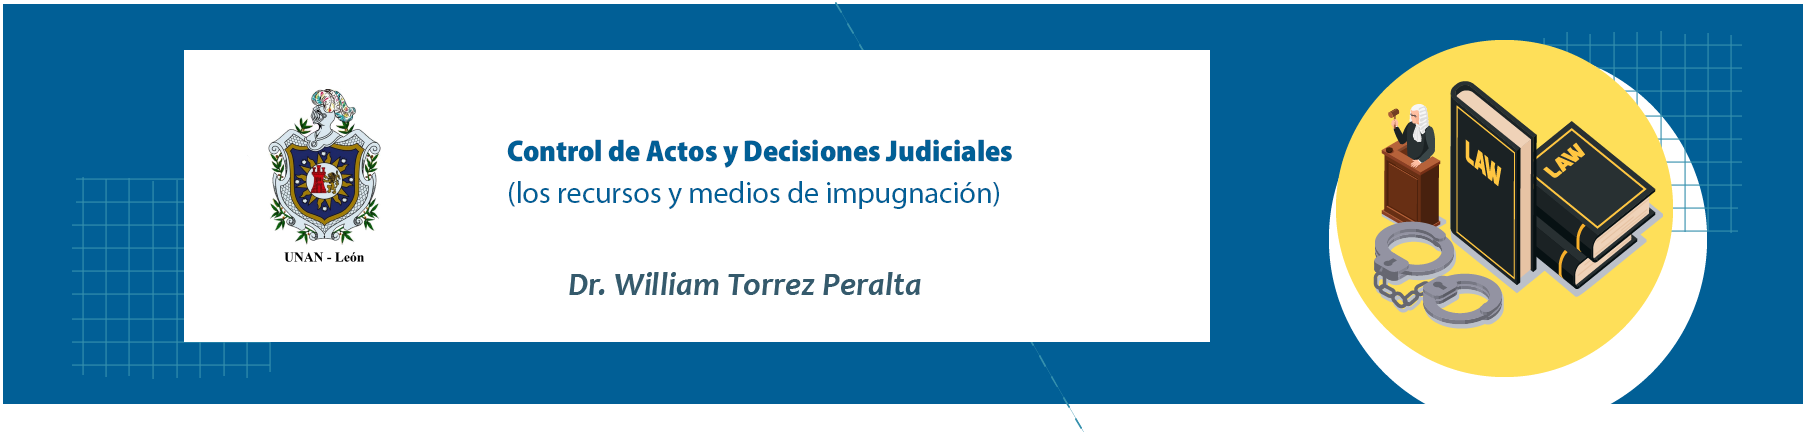 Control de actos y decisiones judiciales (Los recursos o medios de impugnación)